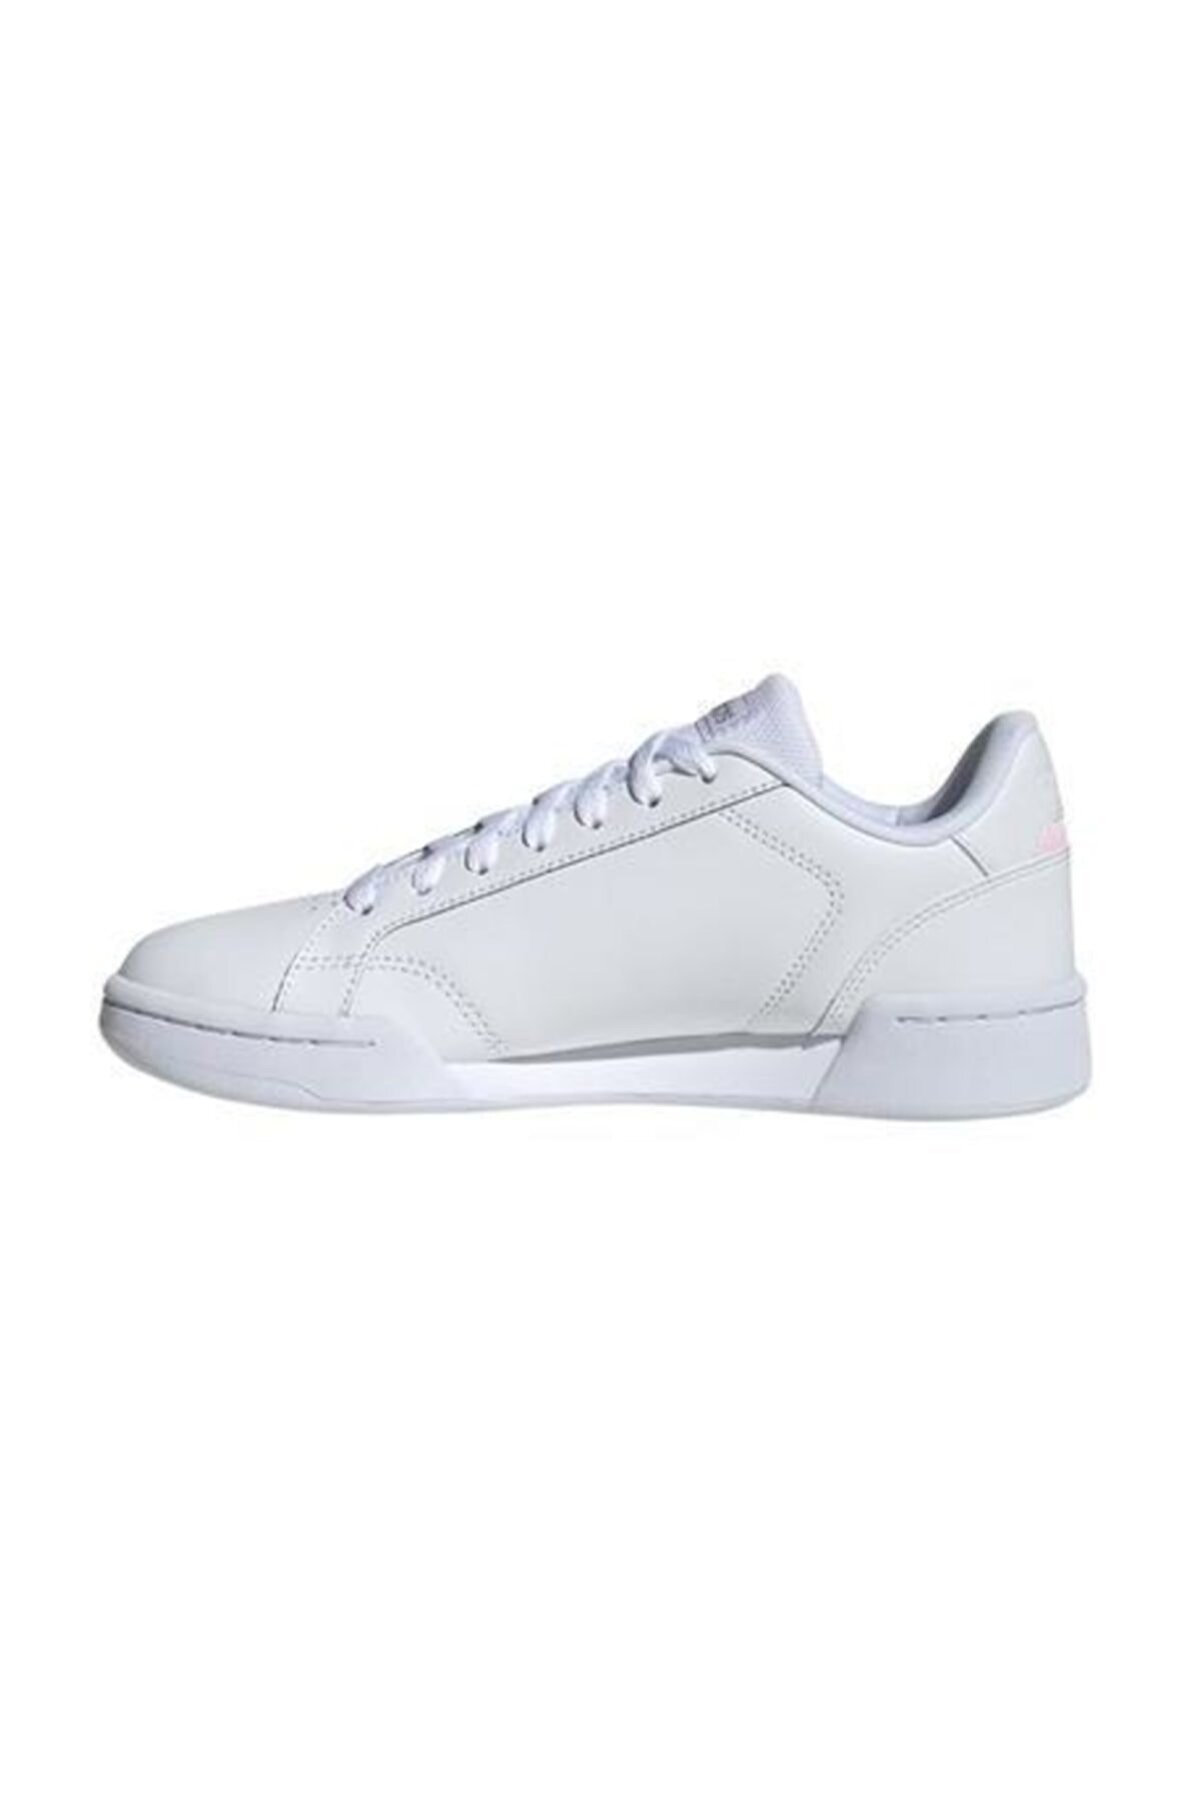 adidas ROGUERA Beyaz Kadın Sneaker Ayakkabı 101069194